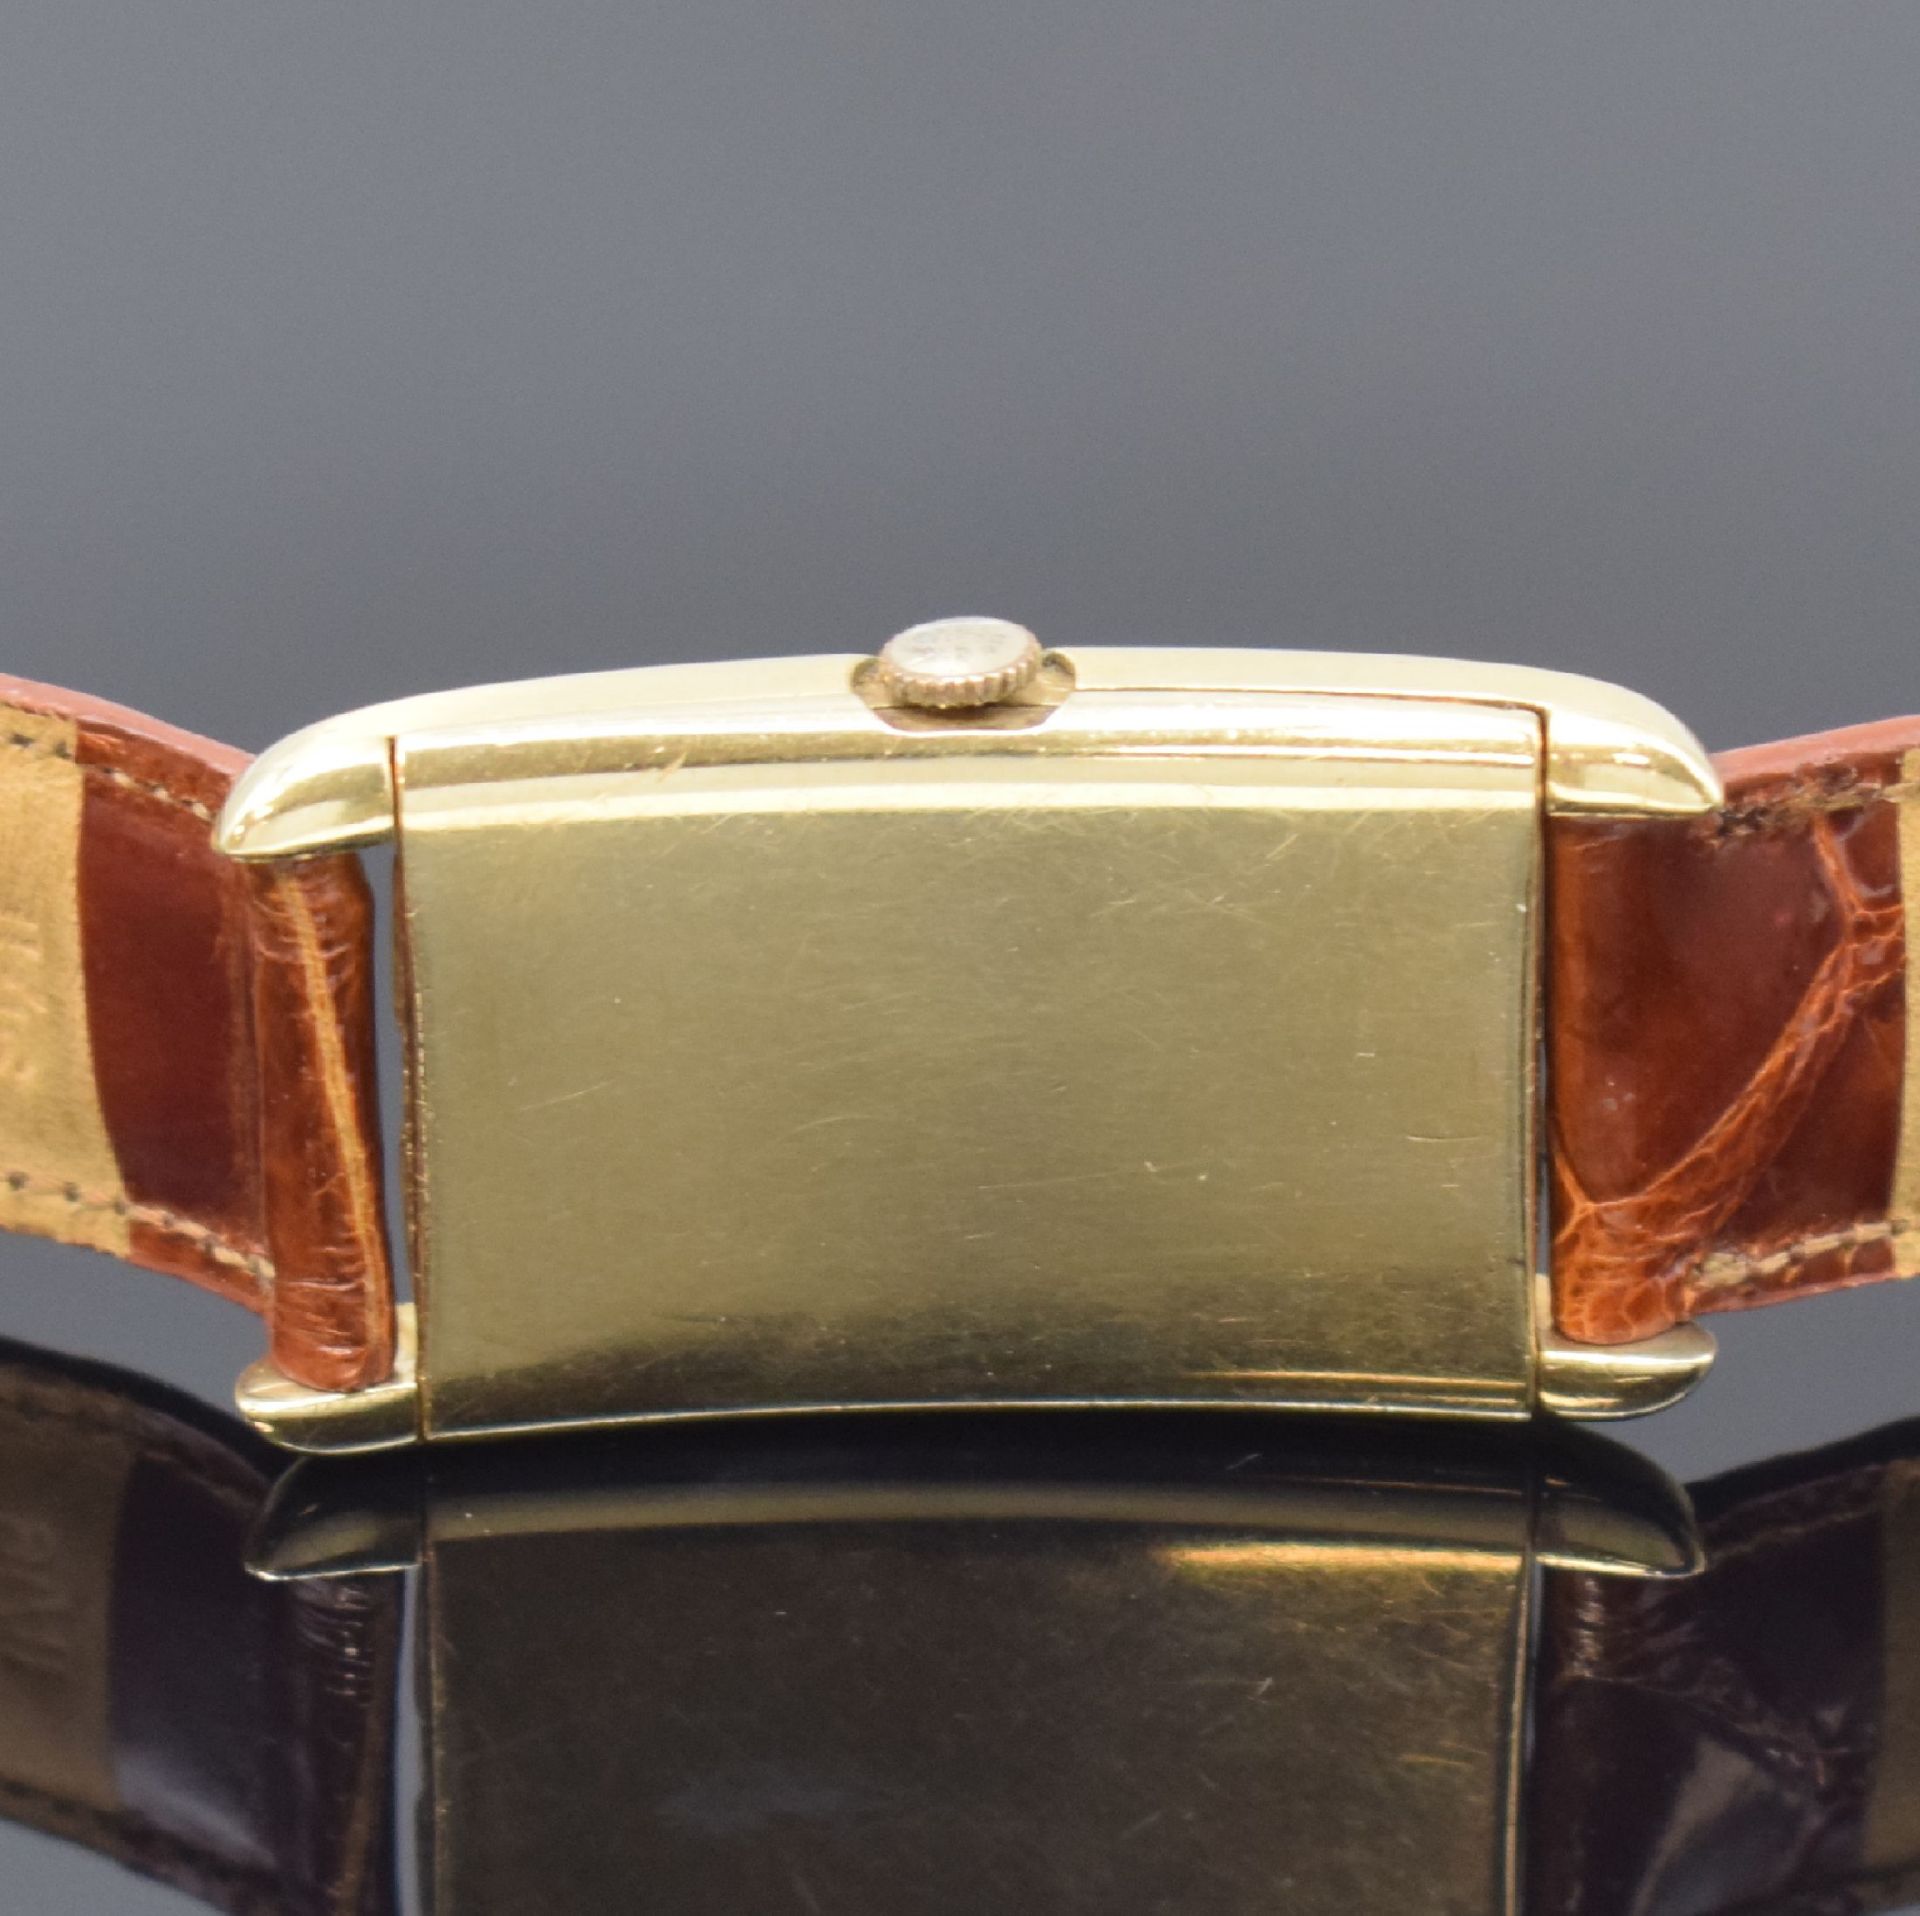 MOVADO rechteckige Armbanduhr Referenz 41819 in GG - Image 4 of 6